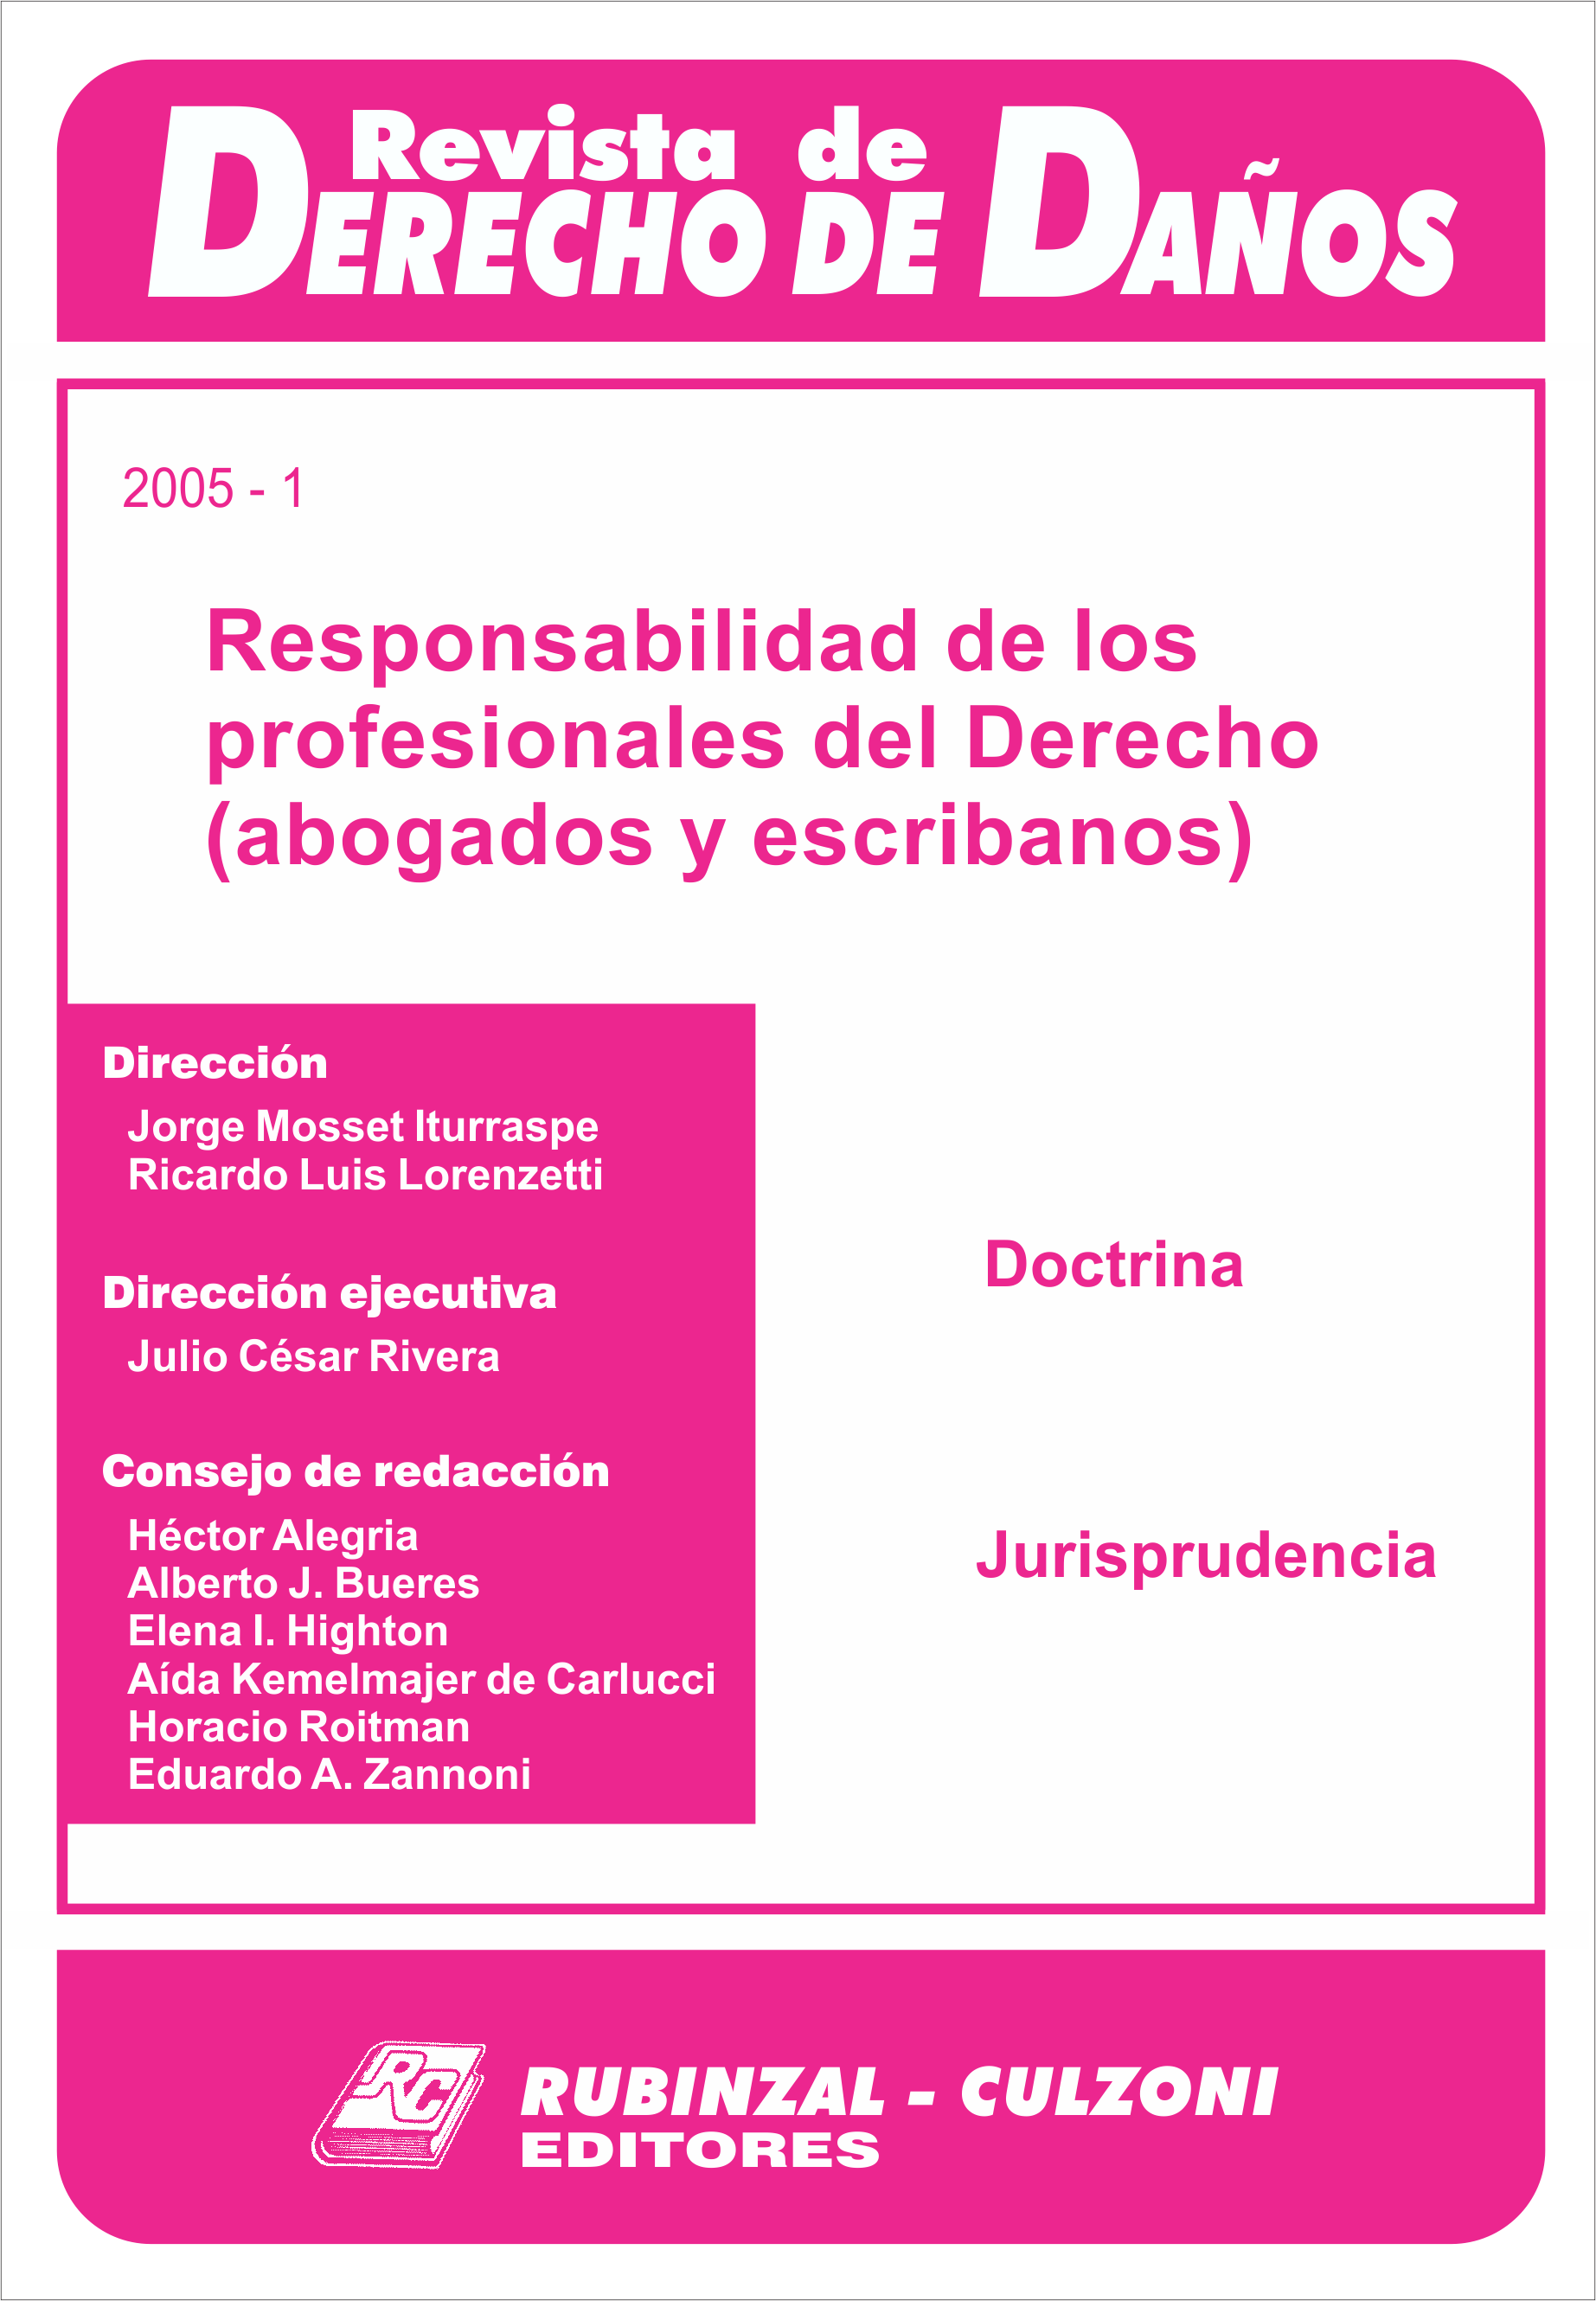 Revista de Derecho de Daños - Responsabilidad de los profesionales del Derecho (abogados y escribanos).